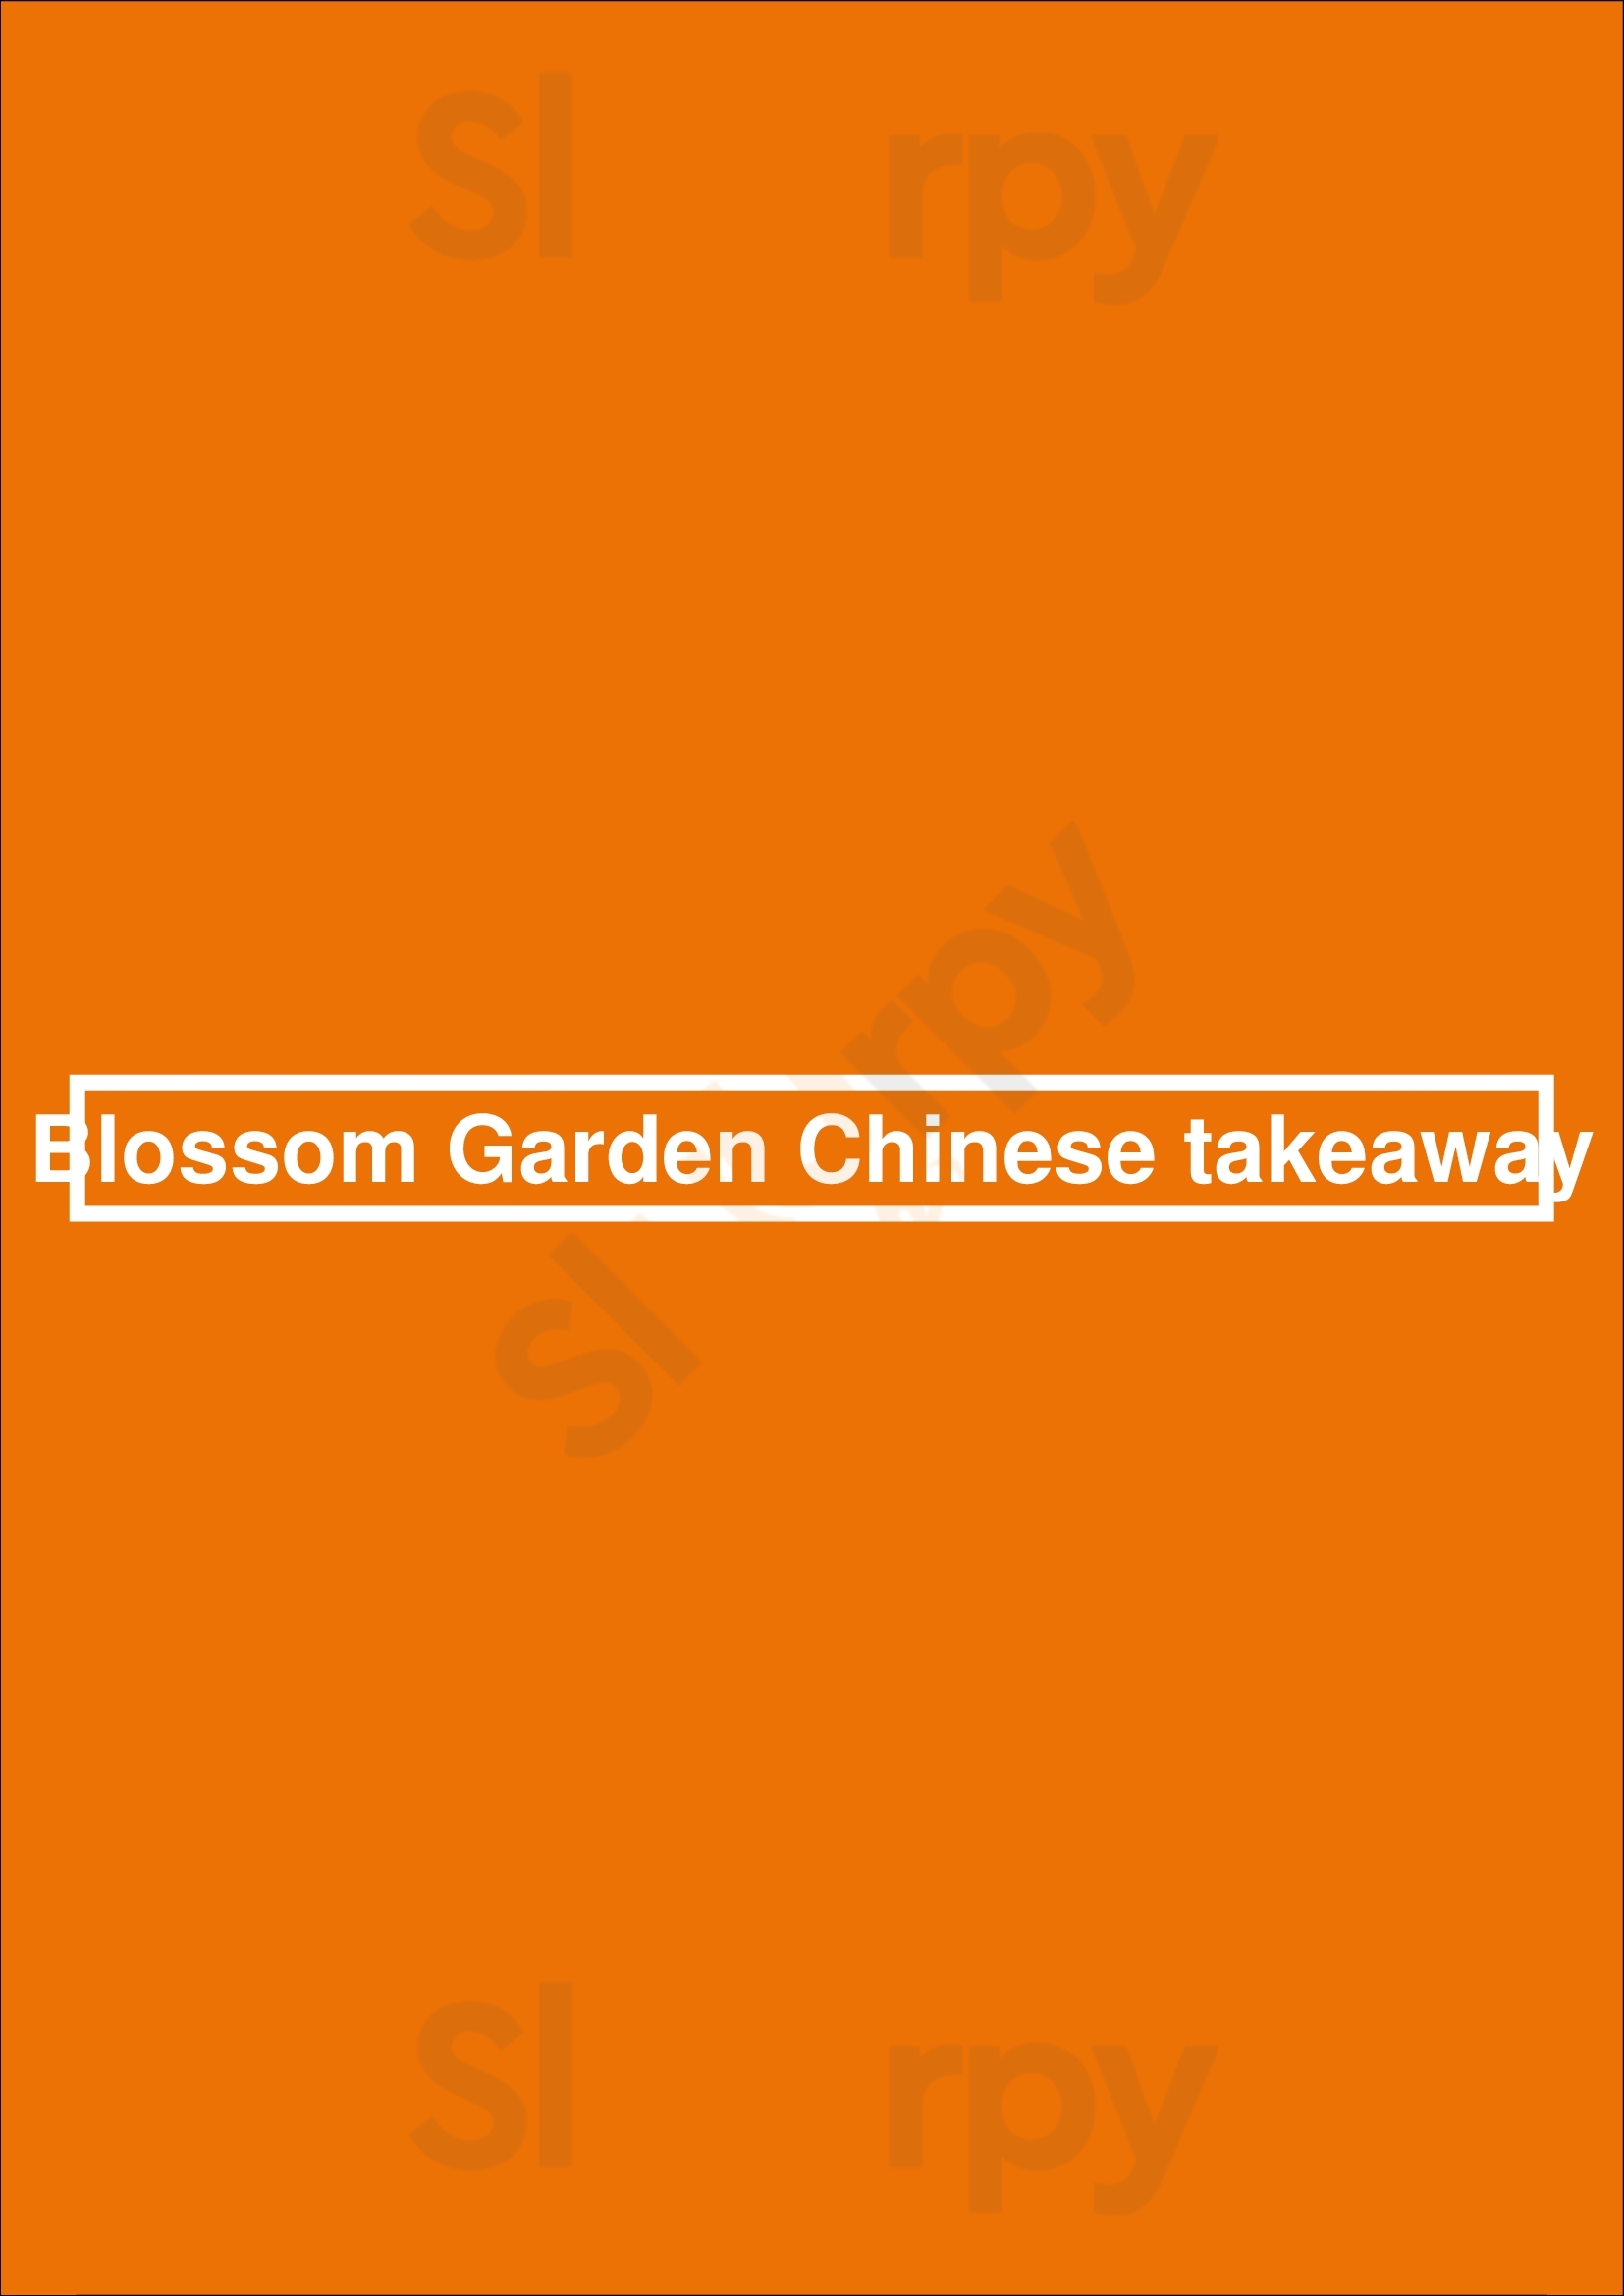 Blossom Garden Chinese Takeaway Derby Menu - 1